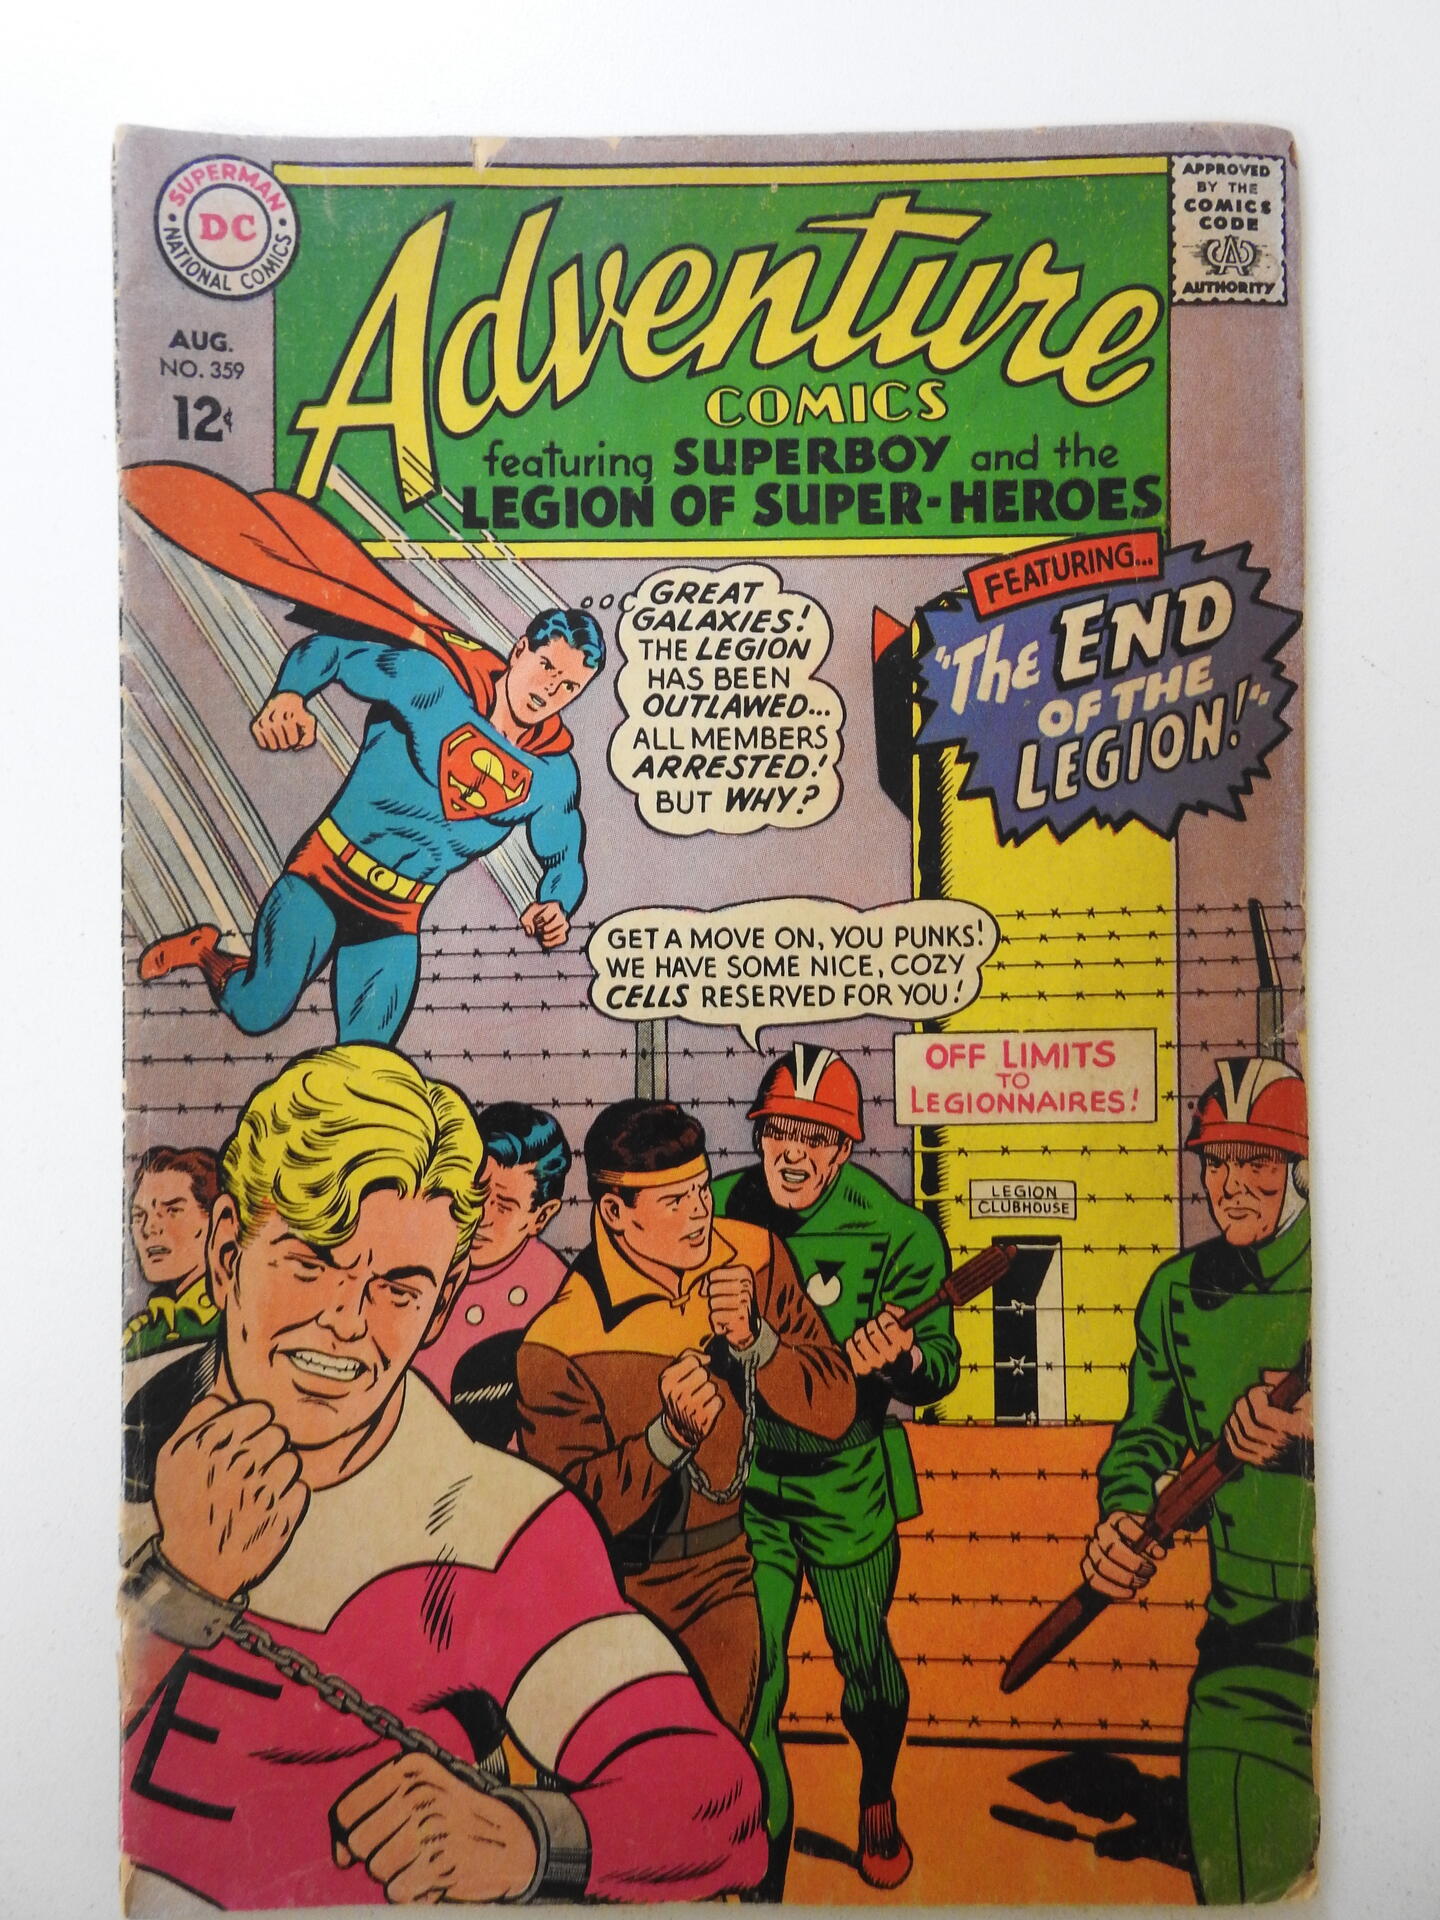 Adventure Comics #359 (1967) VG- Condition | Comic Books - Silver Age ...